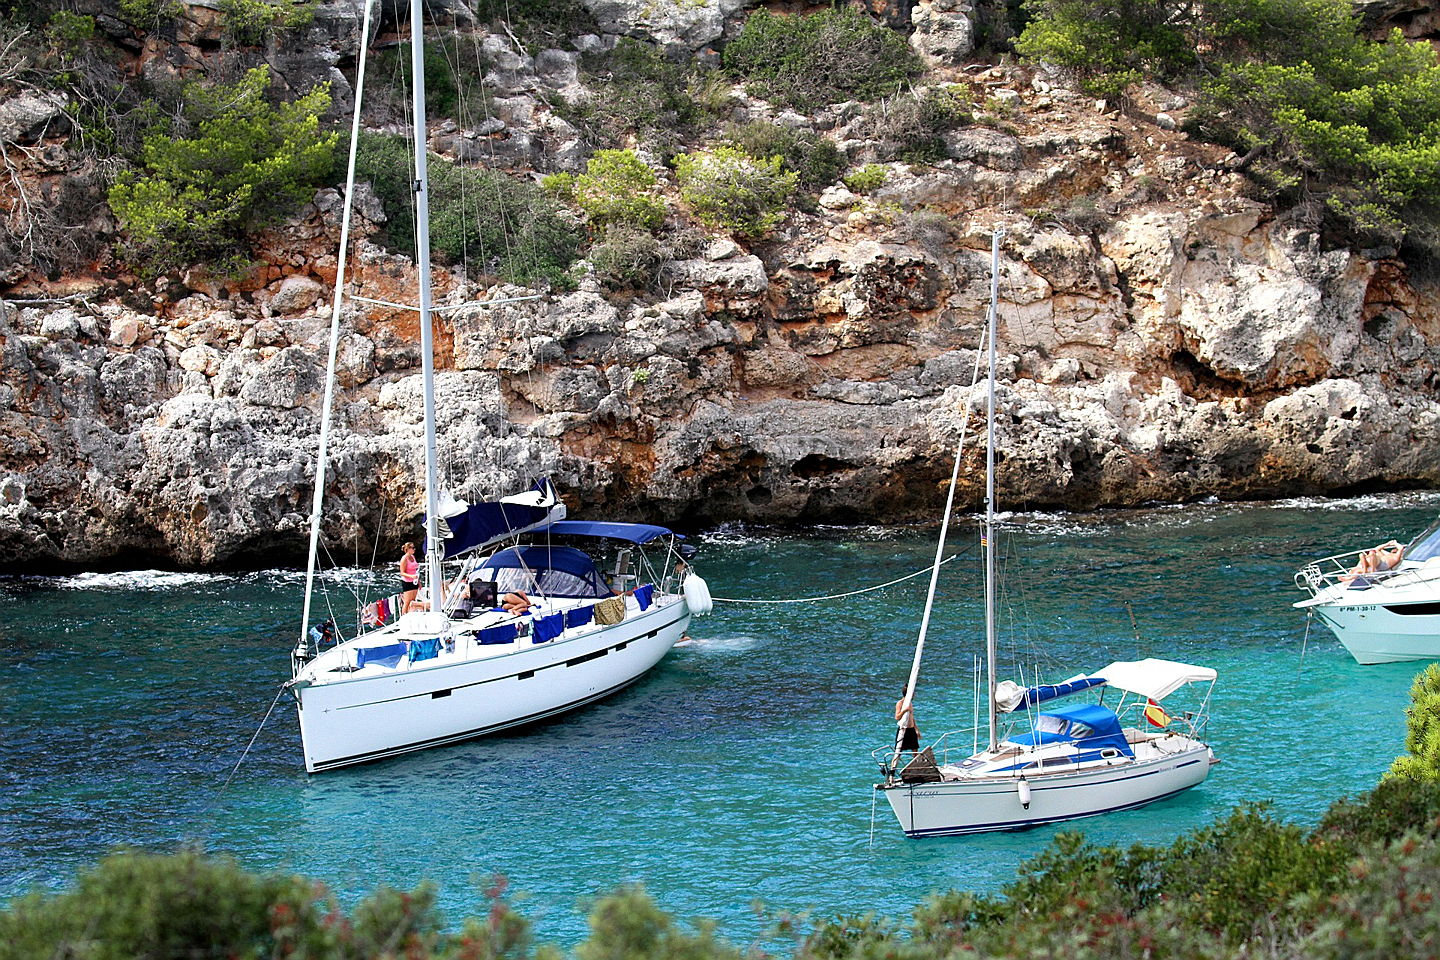  Santanyi
- Calo des Moro, Boote, Mallorca
CaloDesMoro, Boats, Majorca